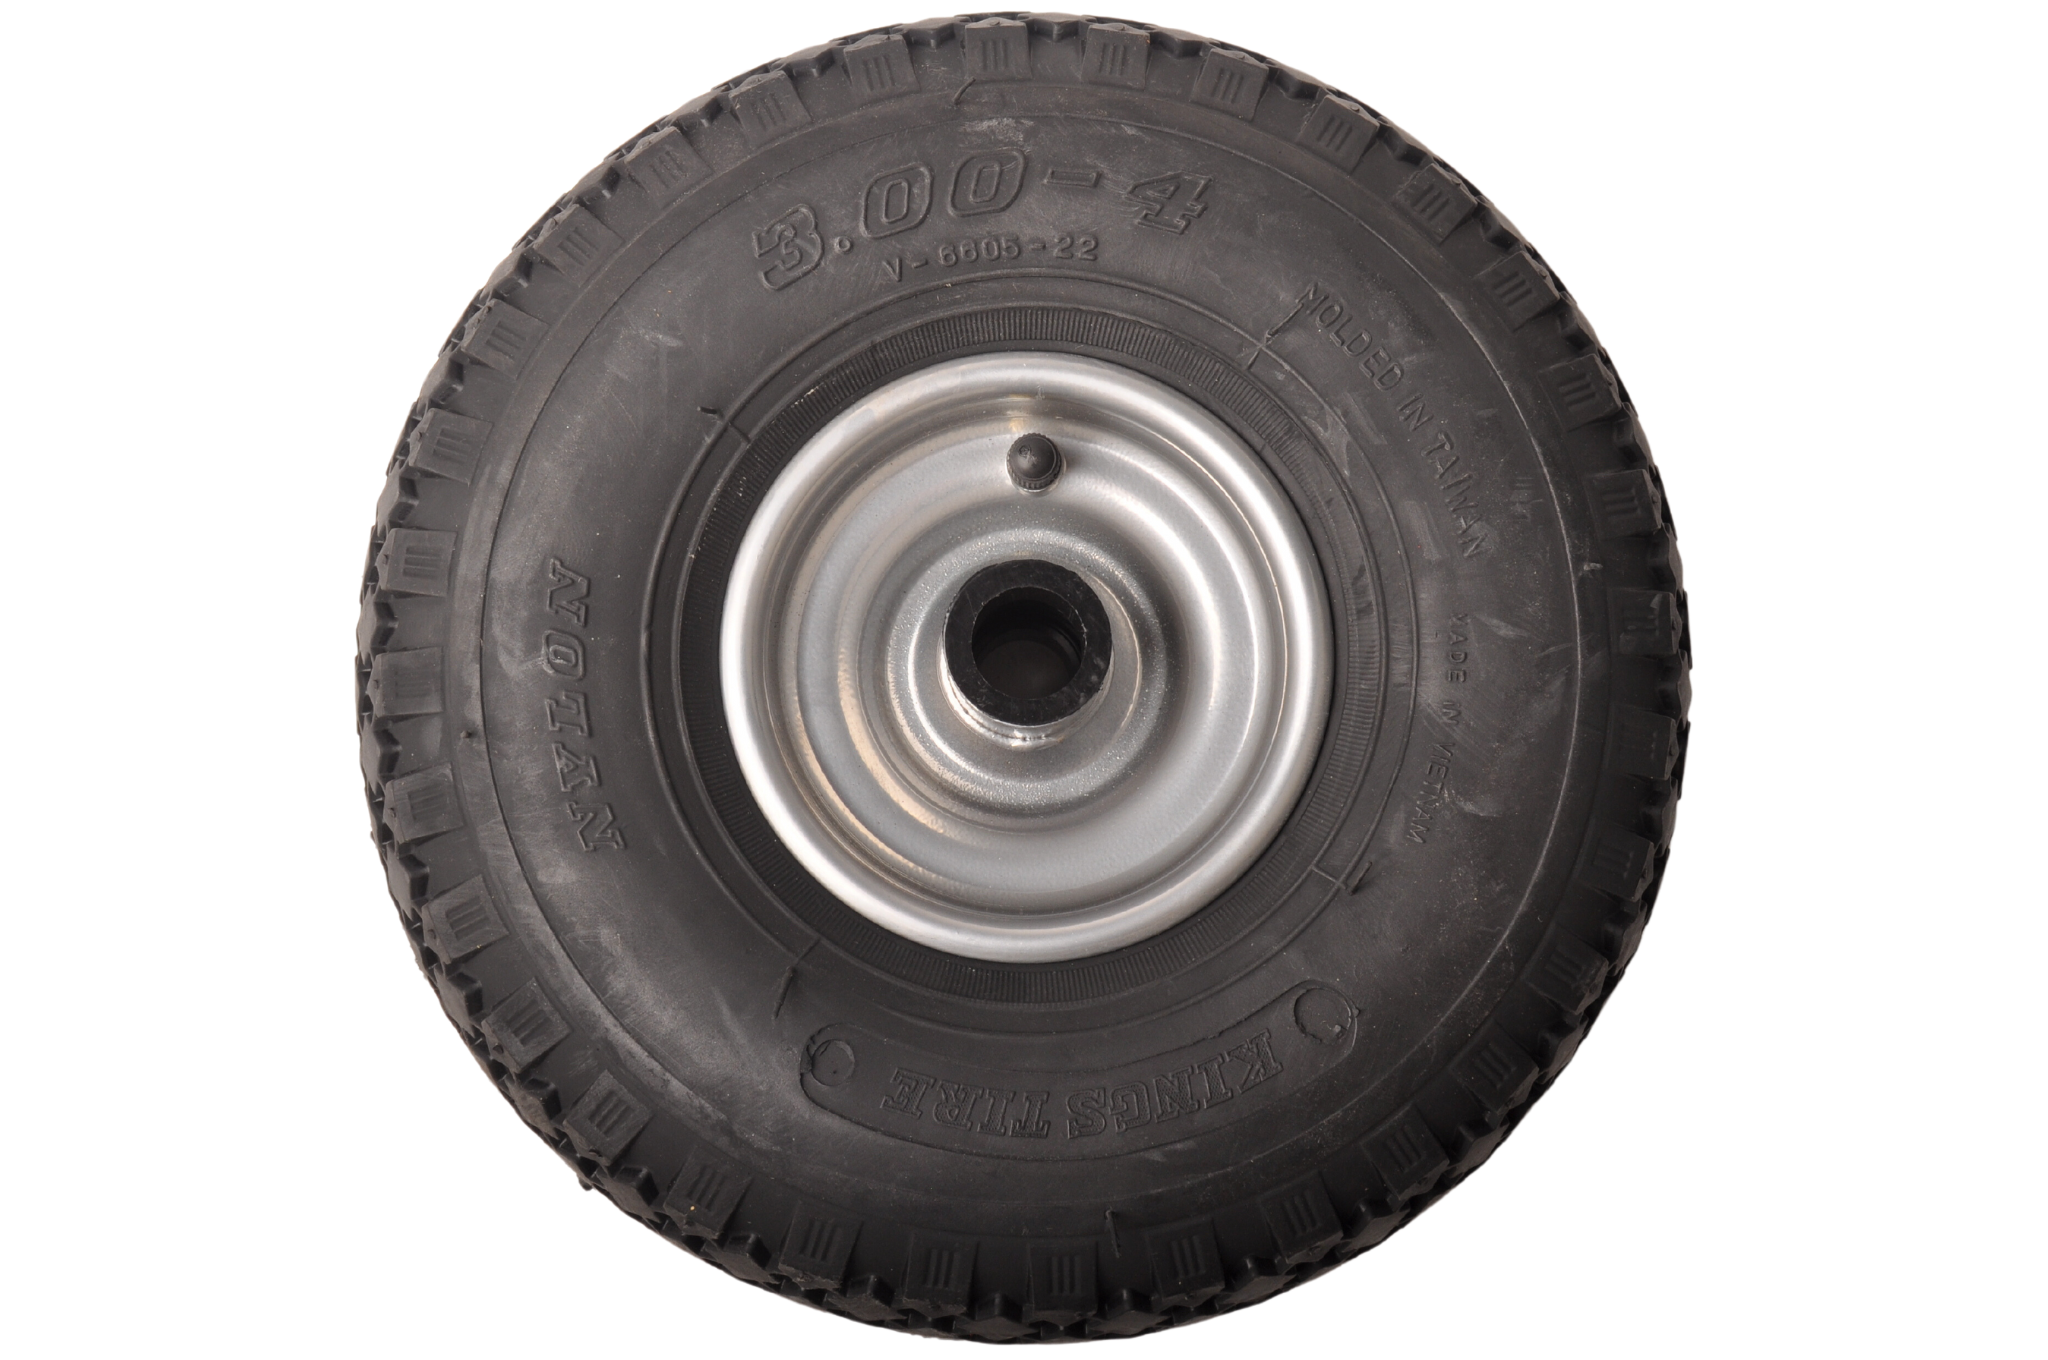 Jockey wheel Ø48 260x85/3.00-4 steel wheel with pneumatic tire